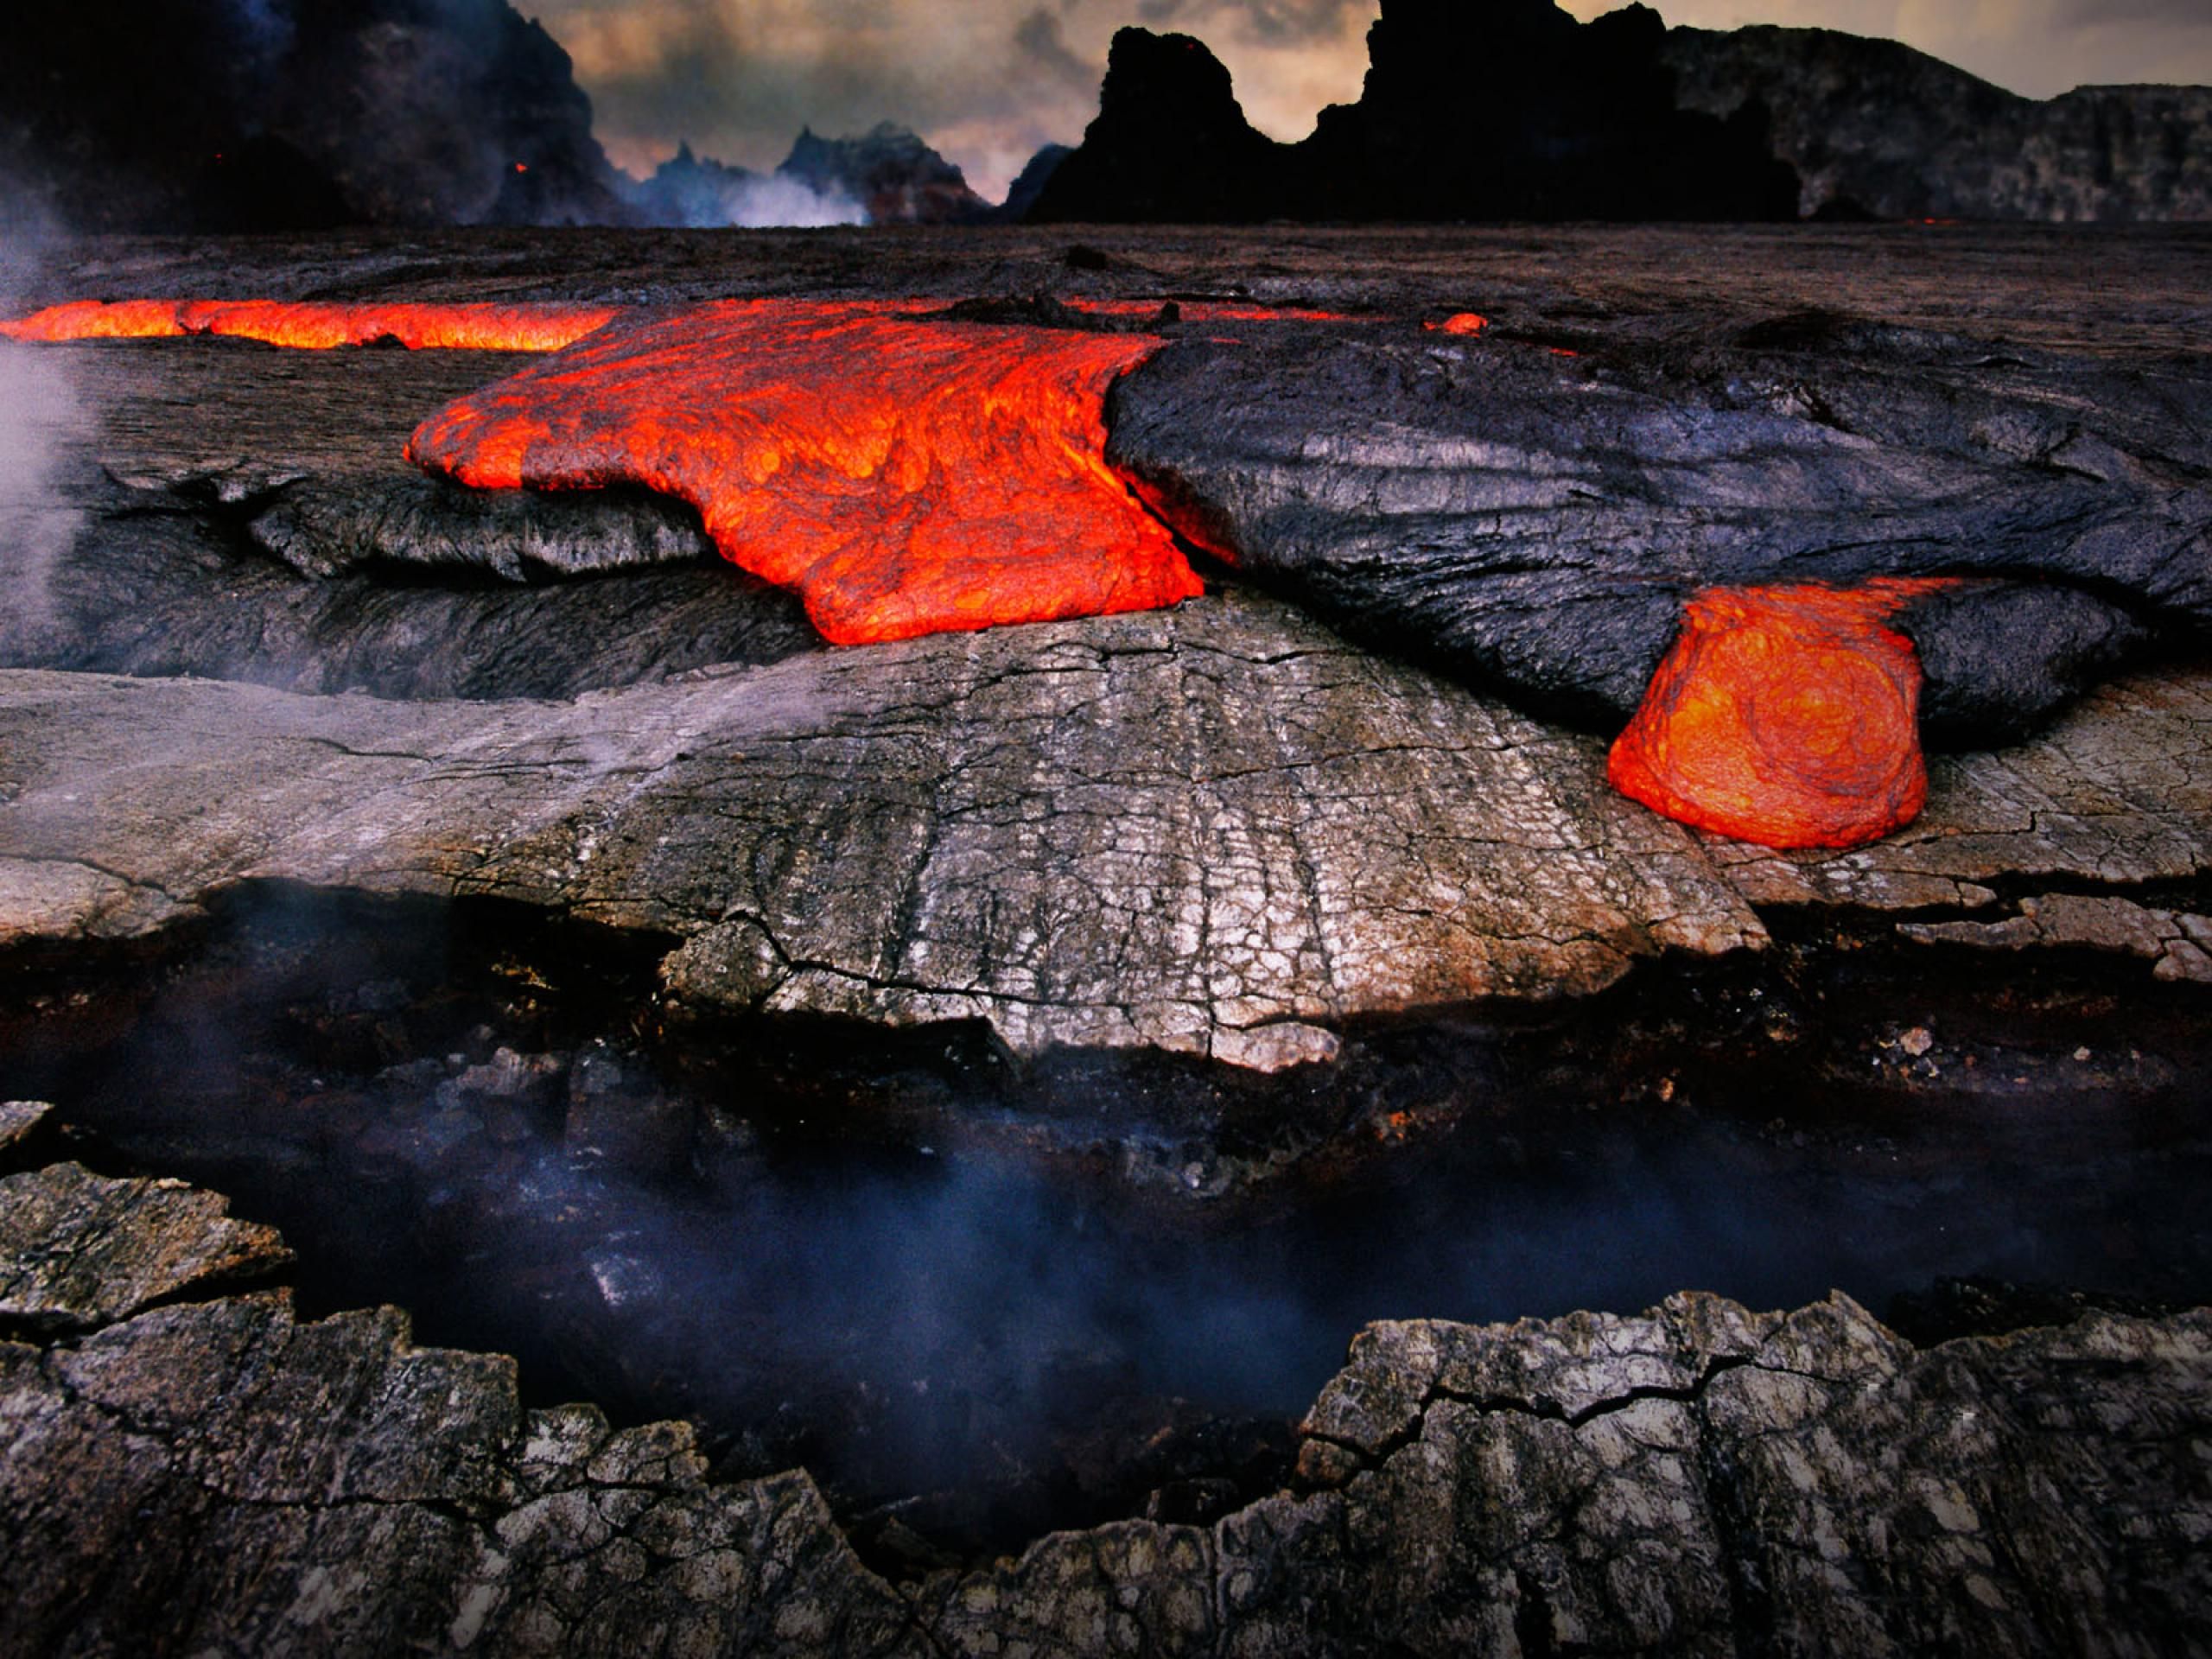 Núi lửa Kilauea: Kilauea hoạt động thường xuyên nhất trong 5 núi lửa ở Hawaii (Mỹ). Ngọn núi lửa này đã liên tục phun trào từ năm 1983 đến nay, quang cảnh của nó khiến nhiều người liên tưởng đến sao Kim, hành tinh có nhiều núi lửa nhất trong Thái Dương Hệ.